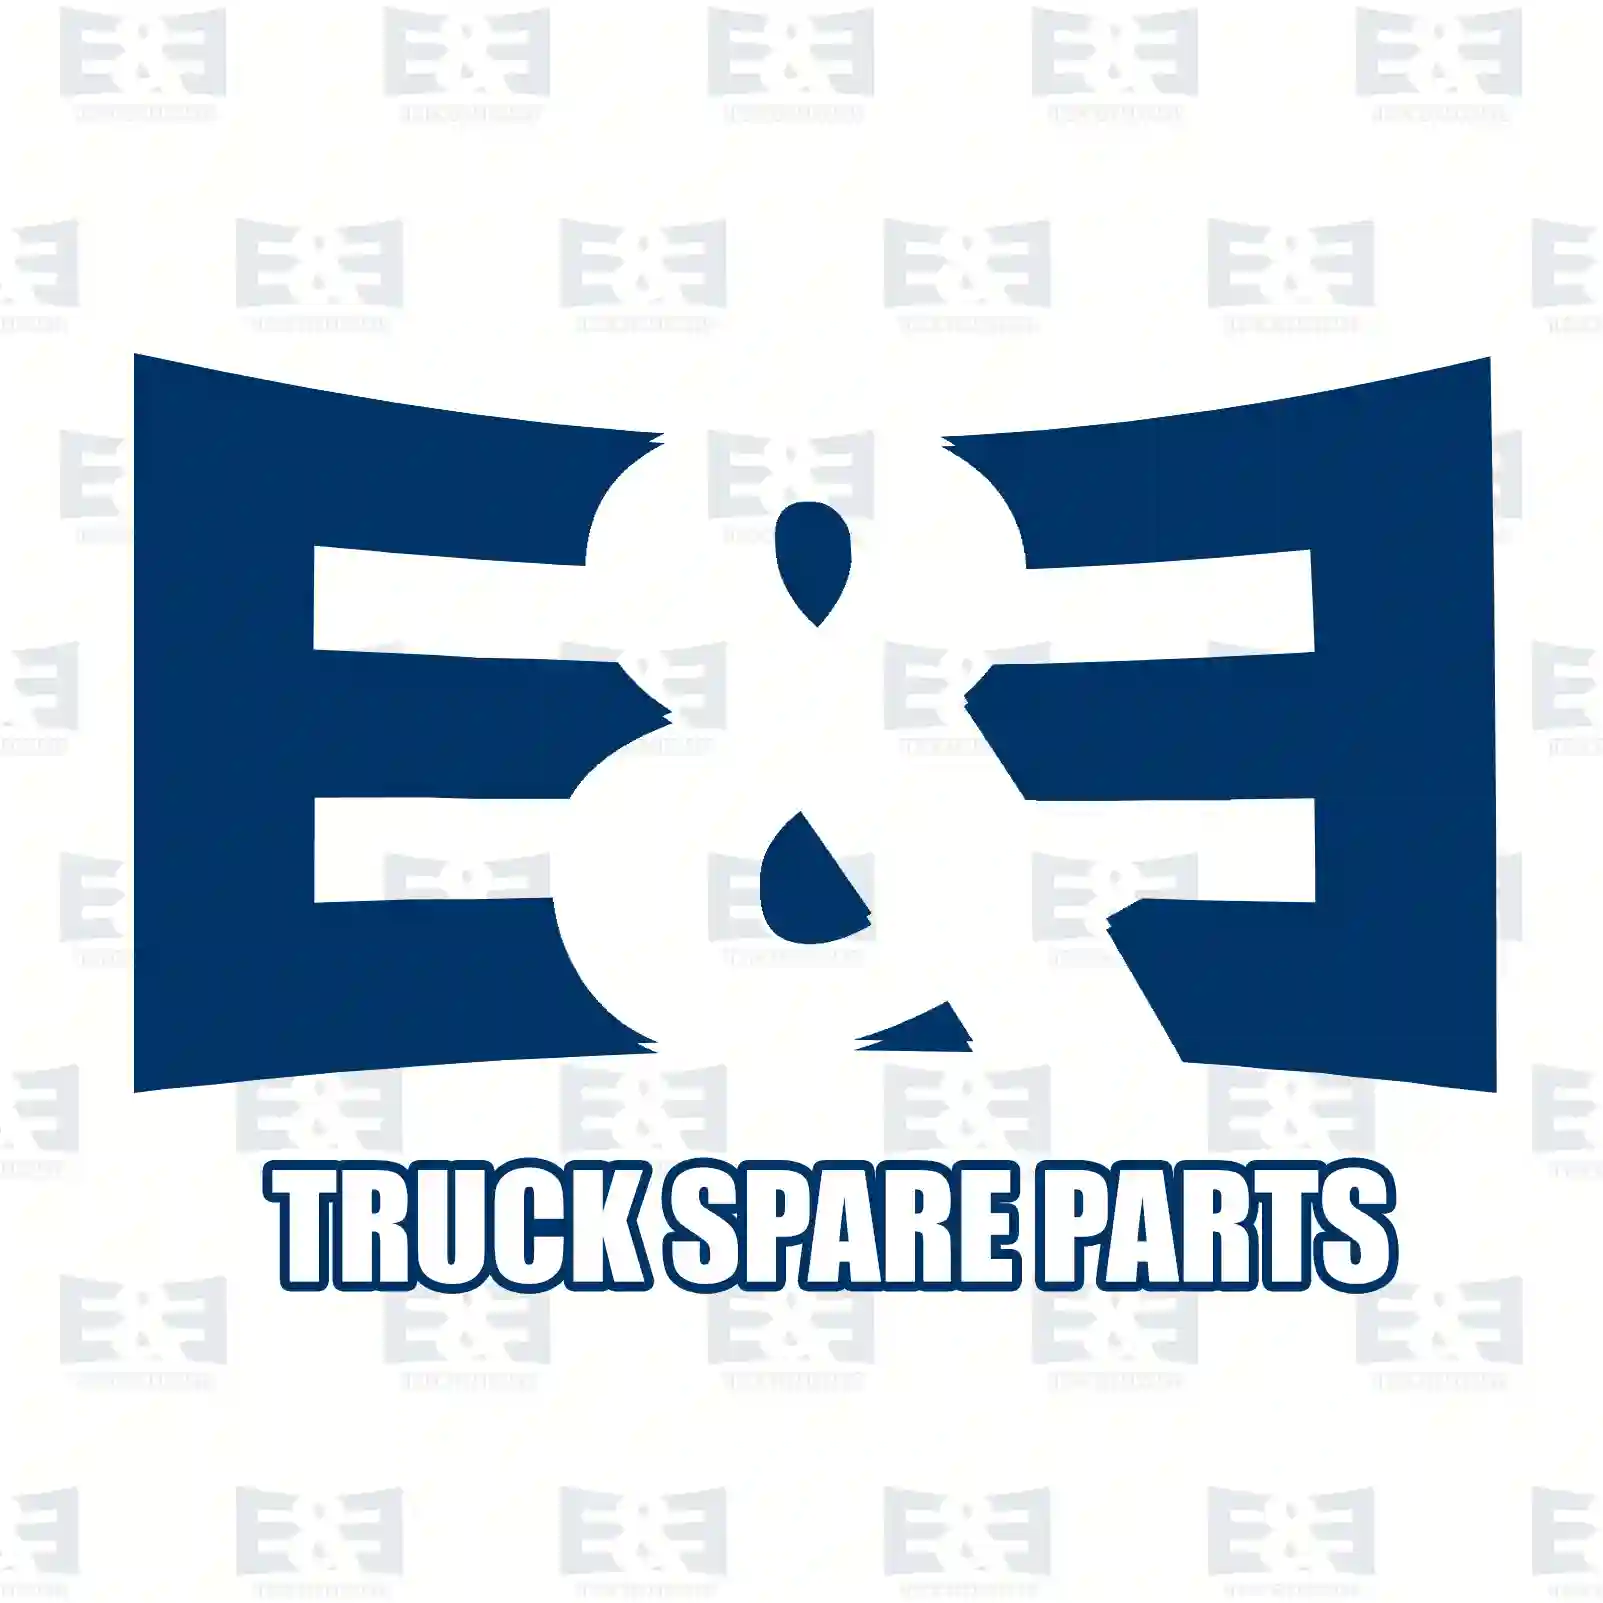 Nylon pipe, black, 2E2285534, 883674, 04351609211, 04351609611, 04351609711, 51963300210, 51963300381, 51963300388, 86461310111, 0089975482, 0089975582, 5689330661, ZG50533-0008 ||  2E2285534 E&E Truck Spare Parts | Truck Spare Parts, Auotomotive Spare Parts Nylon pipe, black, 2E2285534, 883674, 04351609211, 04351609611, 04351609711, 51963300210, 51963300381, 51963300388, 86461310111, 0089975482, 0089975582, 5689330661, ZG50533-0008 ||  2E2285534 E&E Truck Spare Parts | Truck Spare Parts, Auotomotive Spare Parts